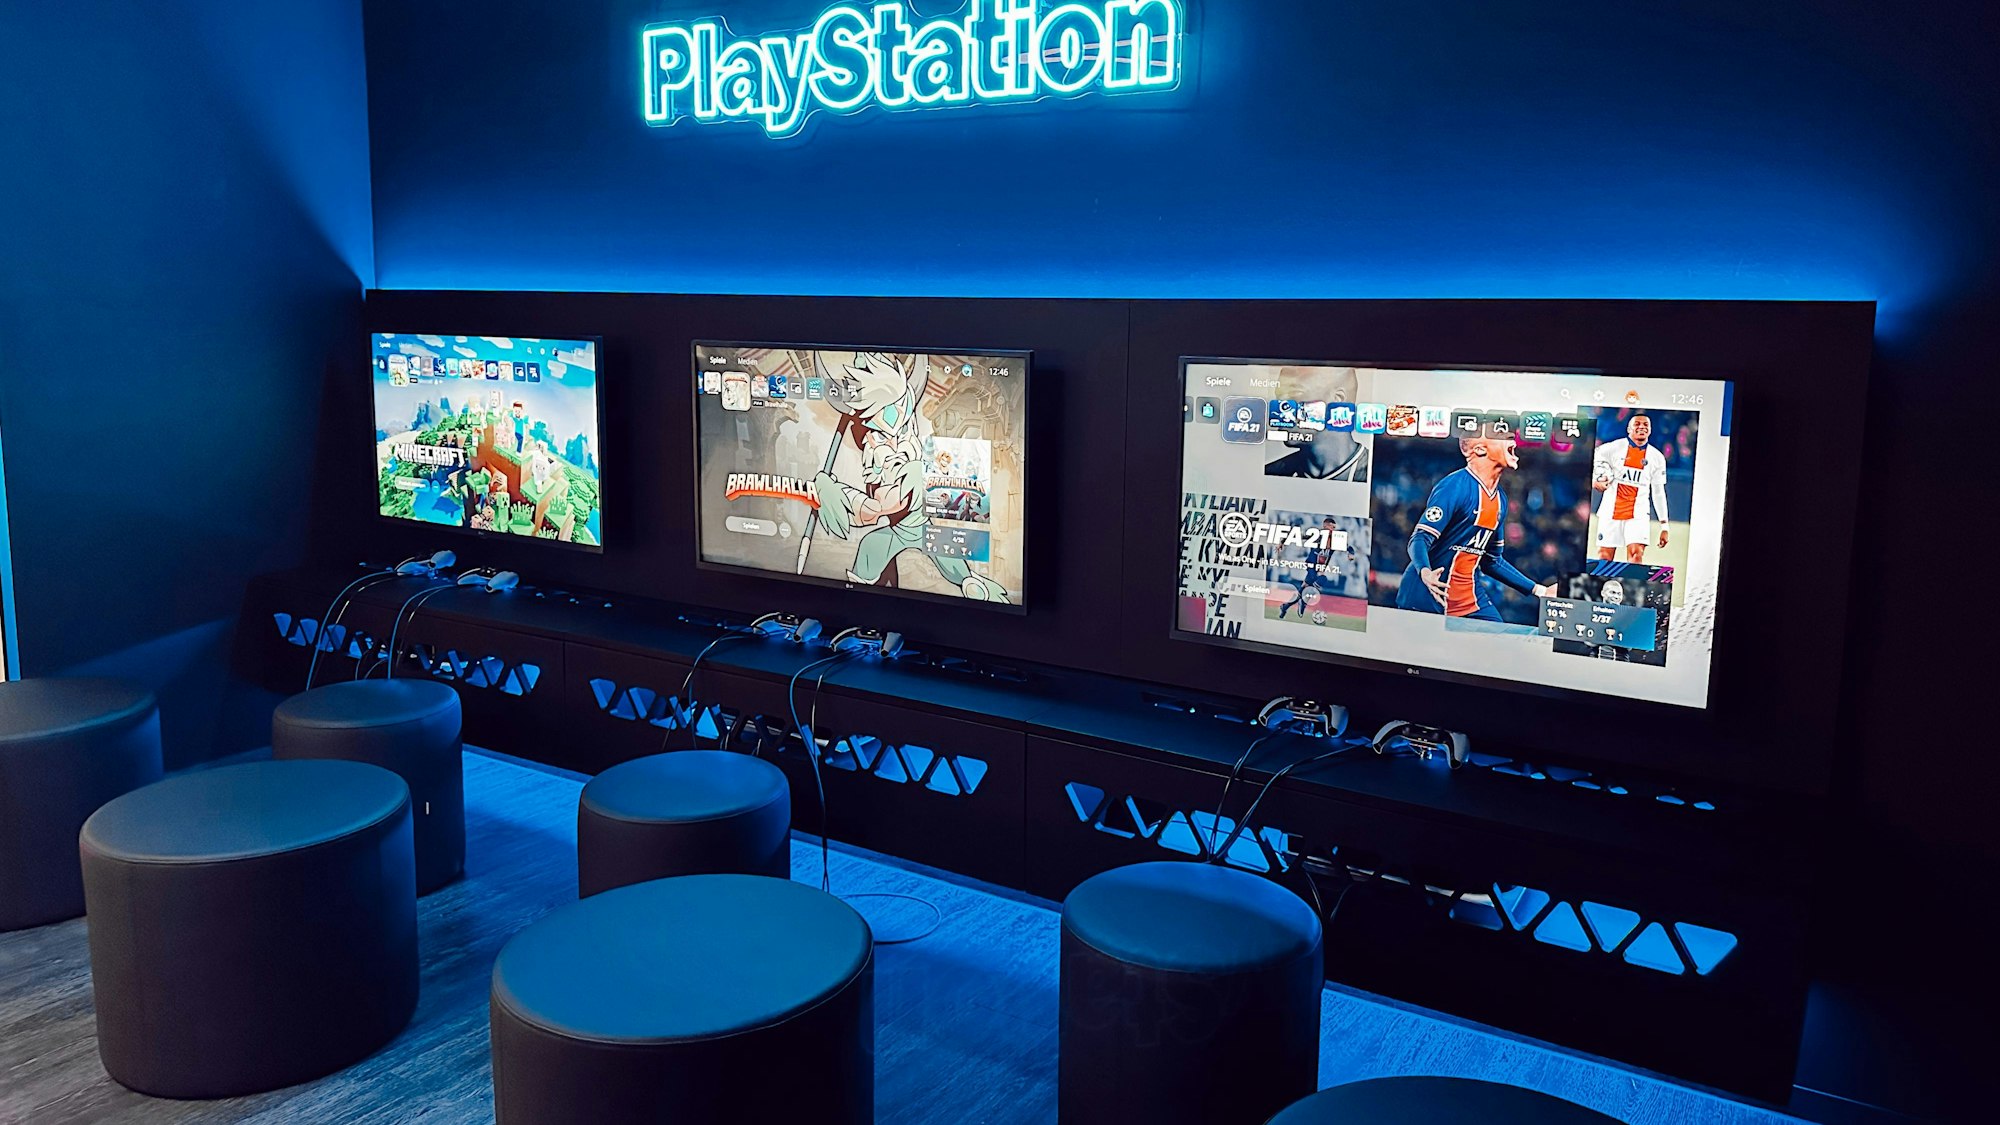 Gaming-Wartezimmer in der Praxis Cologne Smile in Sülz mit drei großen Bildschirmen